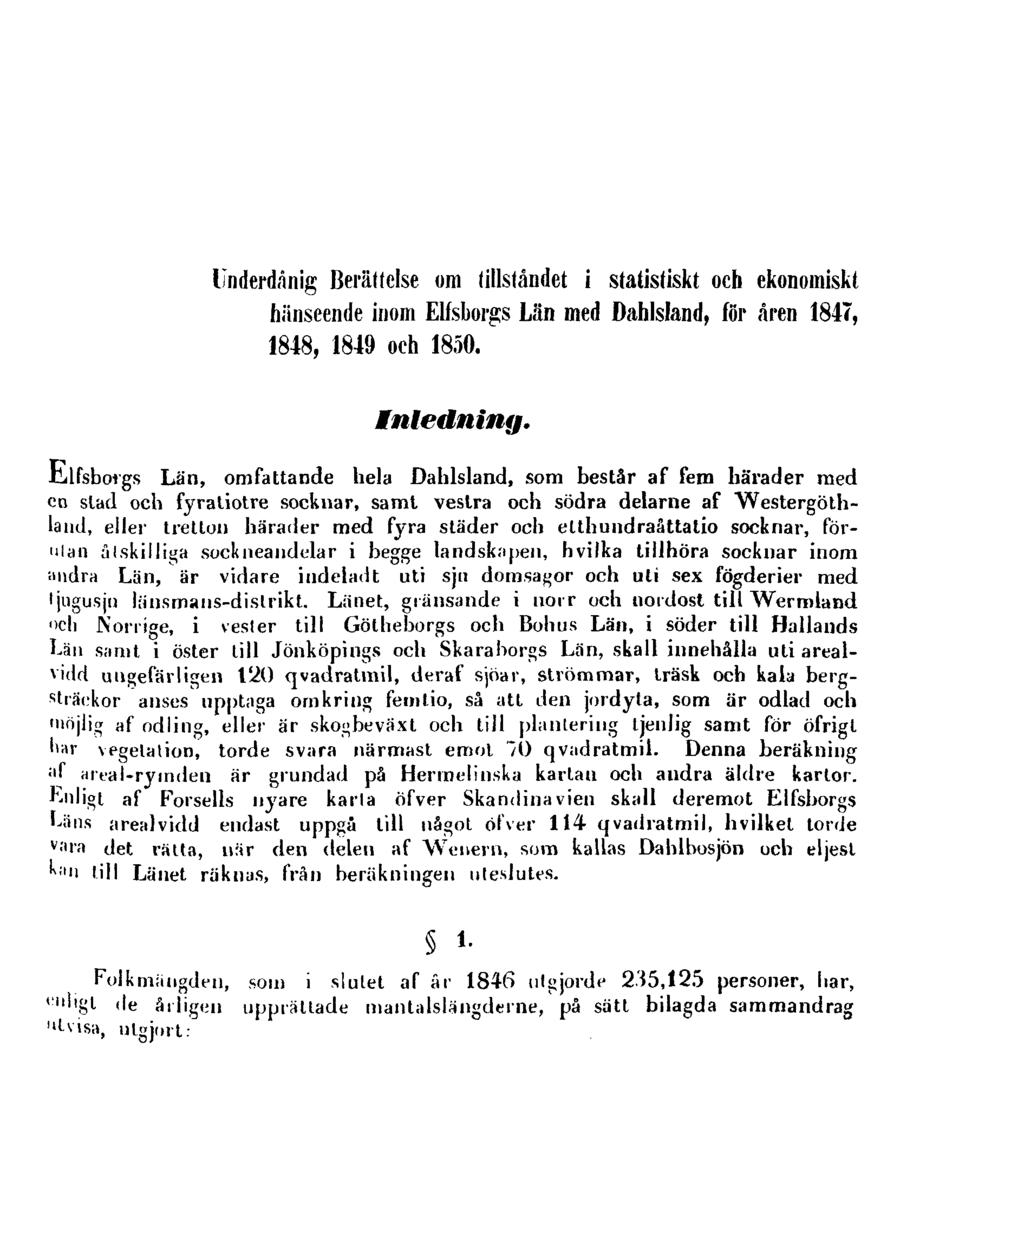 Underdånig Berättelse om tillståndet i statistiskt och ekonomiskt hänseende inom Elfsborgs Län med Dahlsland, för åren 1847, 1848, 1849 och 1850. Inledning.